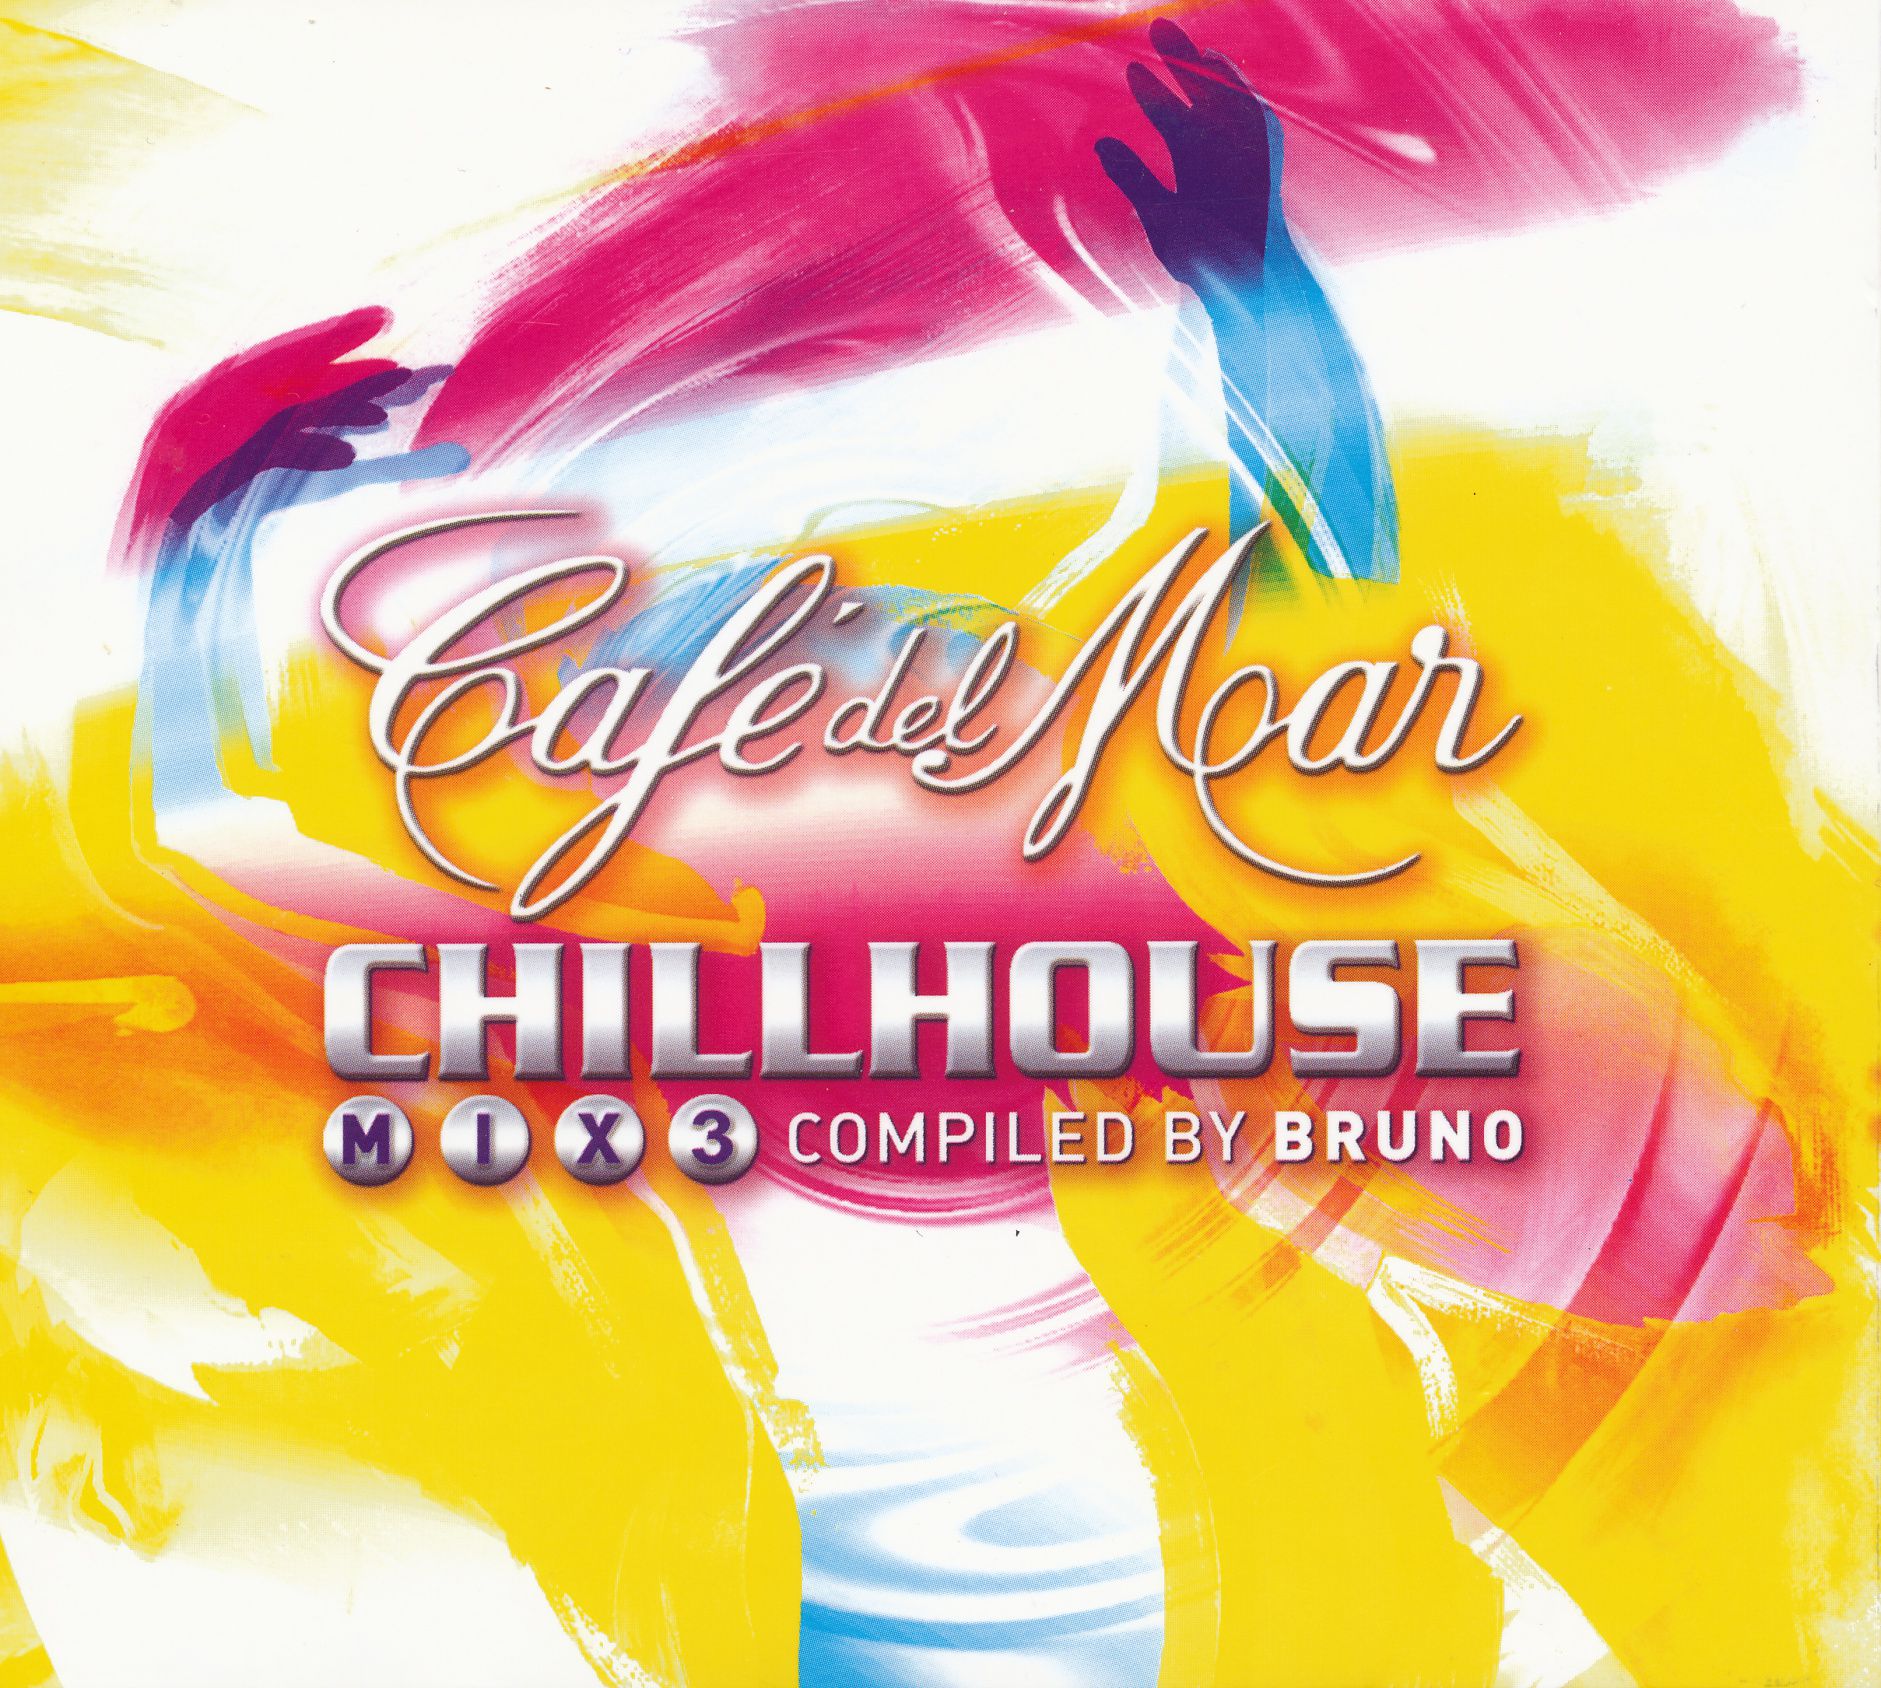 Release “Café del Mar: ChillHouse Mix 3” by Bruno - MusicBrainz